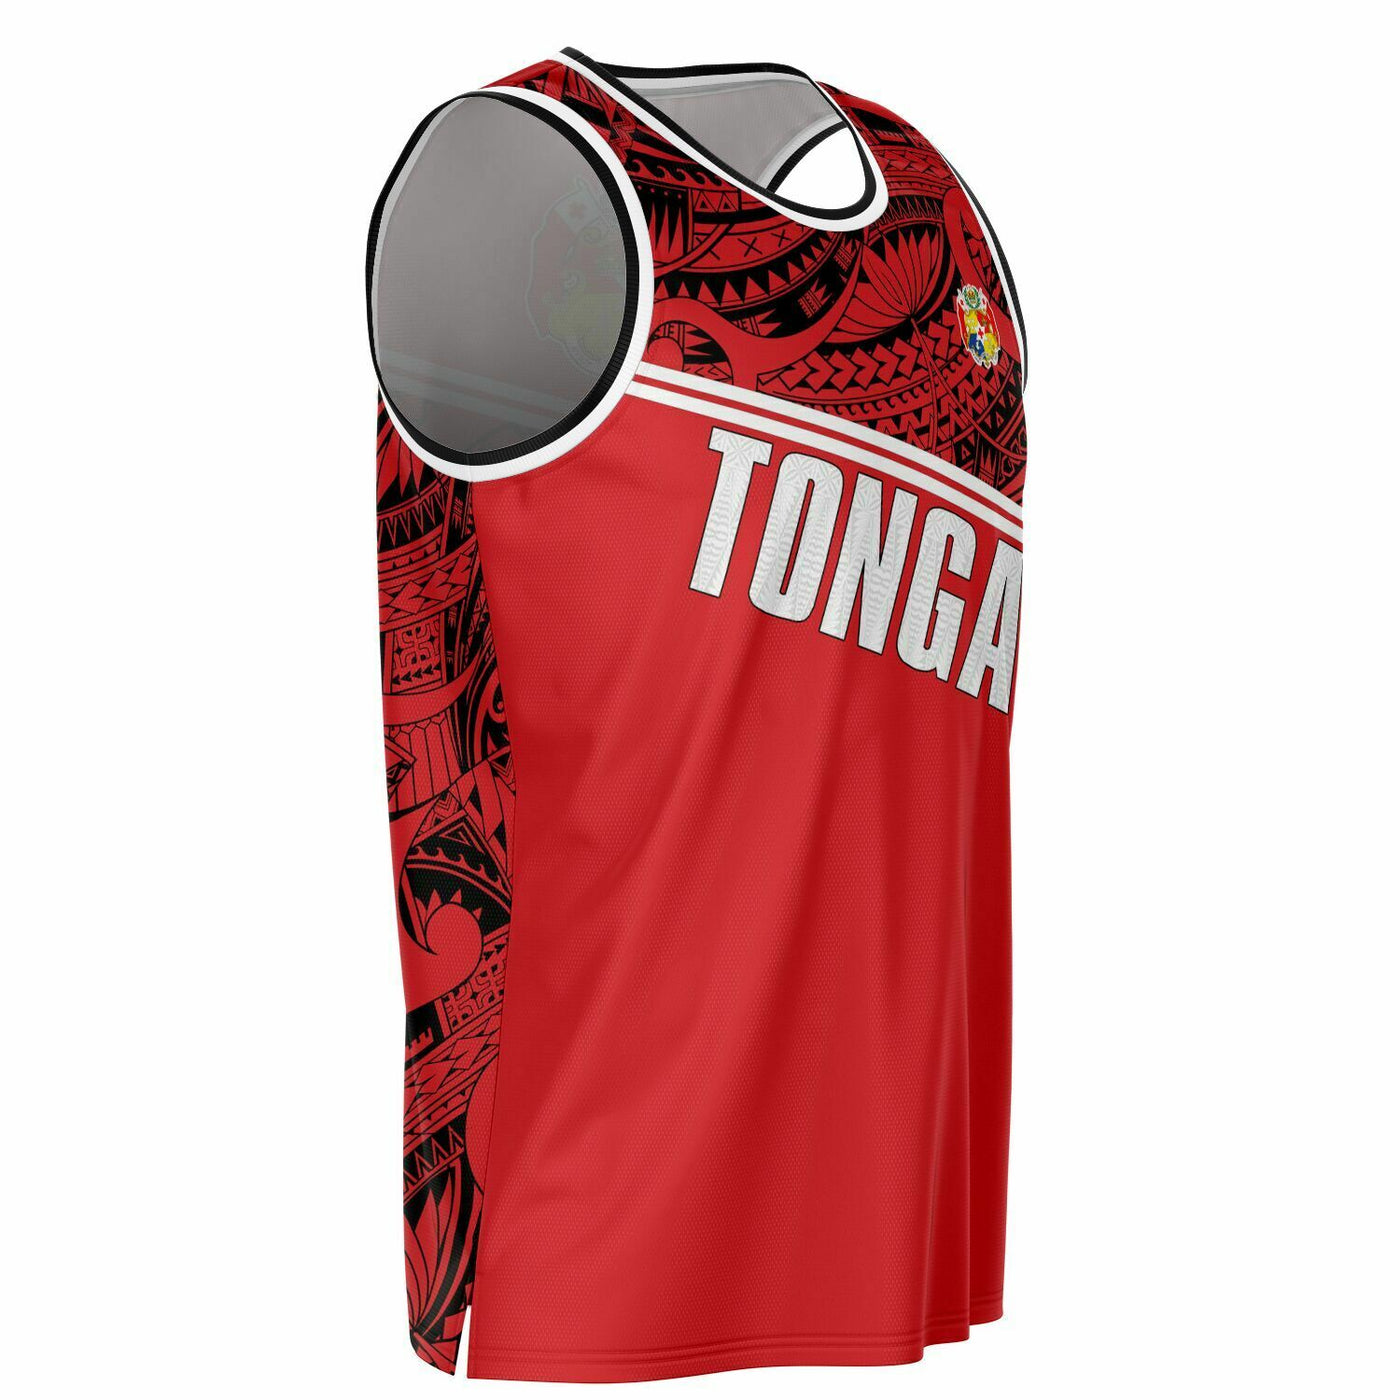 Subliminator Sila Tonga Basketball Jersey - Tongan Design